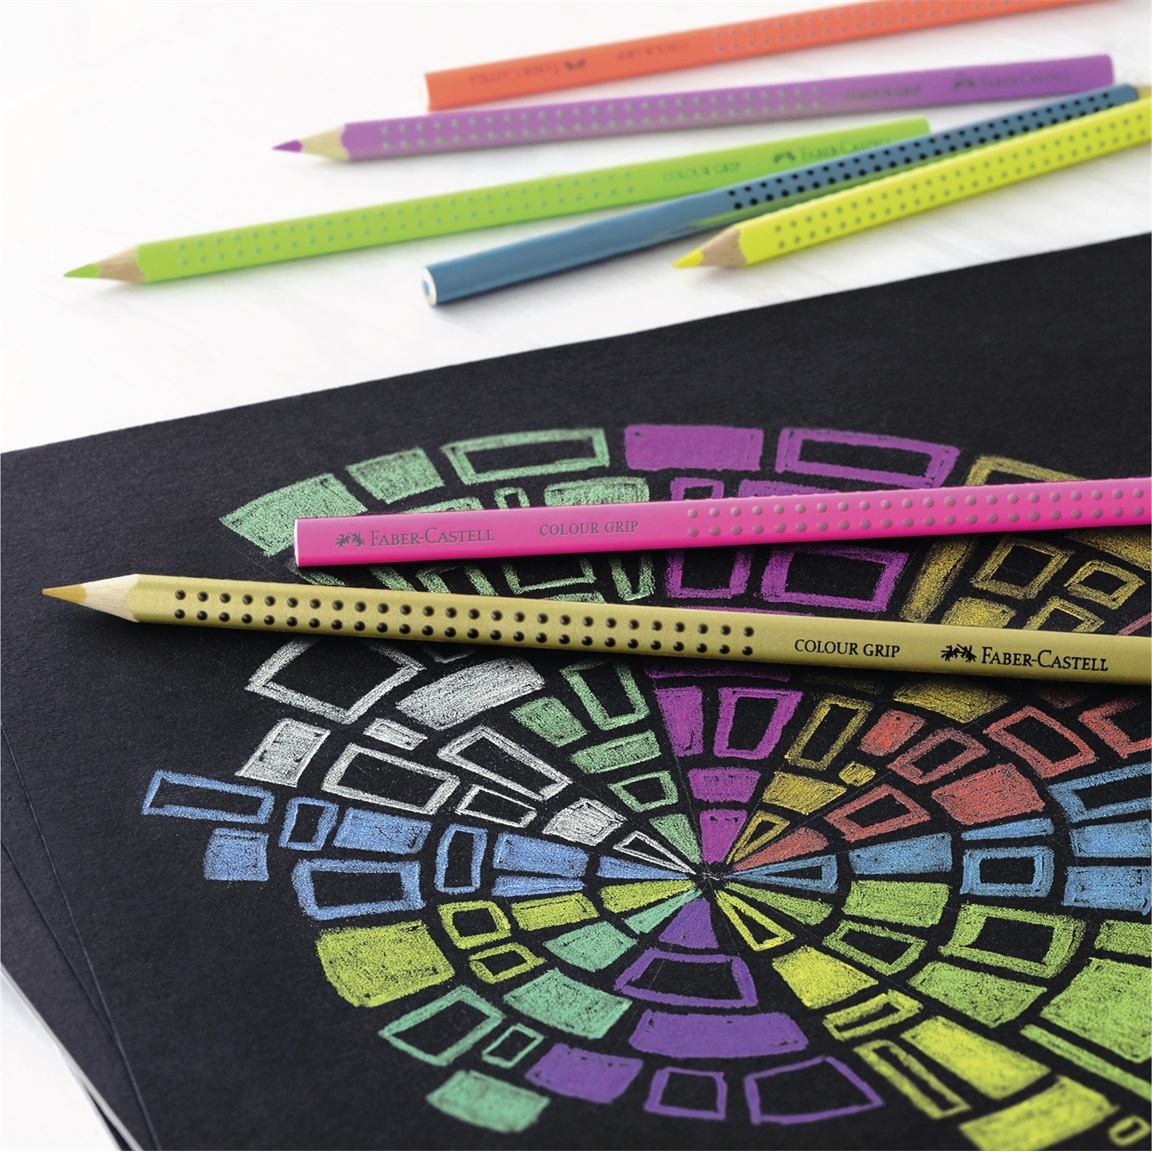 Etui de 12 crayons de couleurs fluo, pastel et métallisés